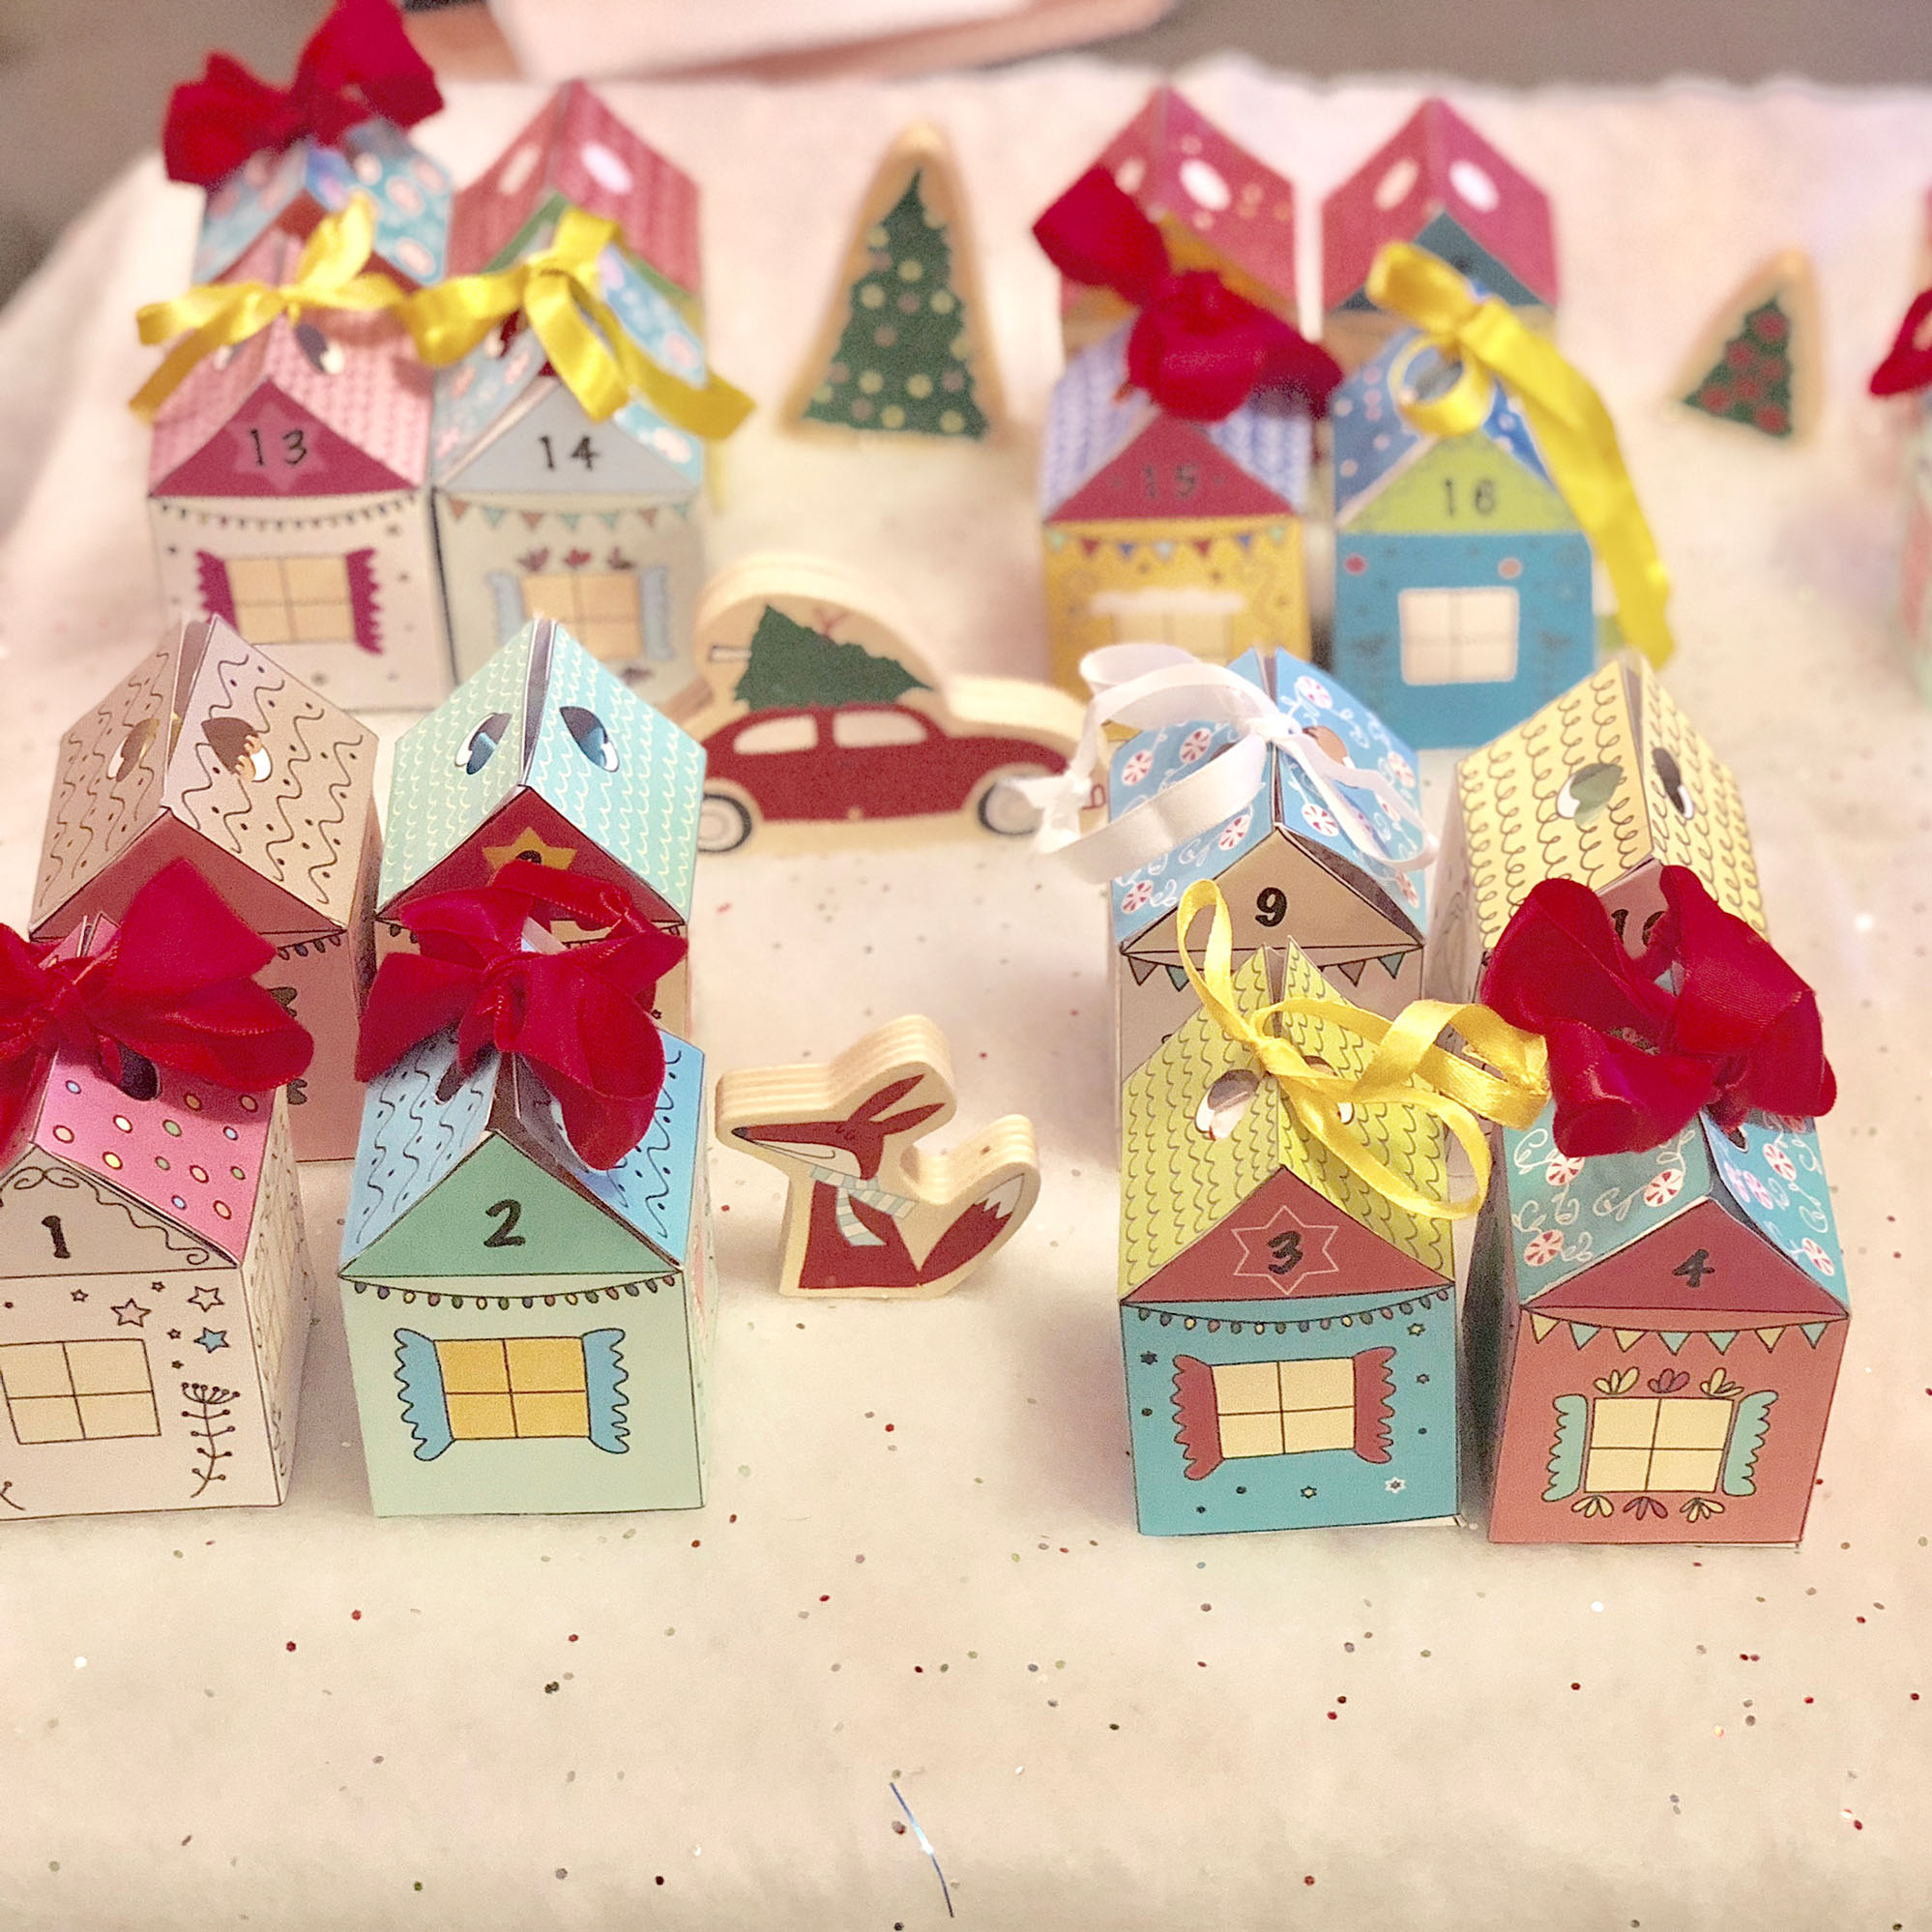 24 Christmas houses